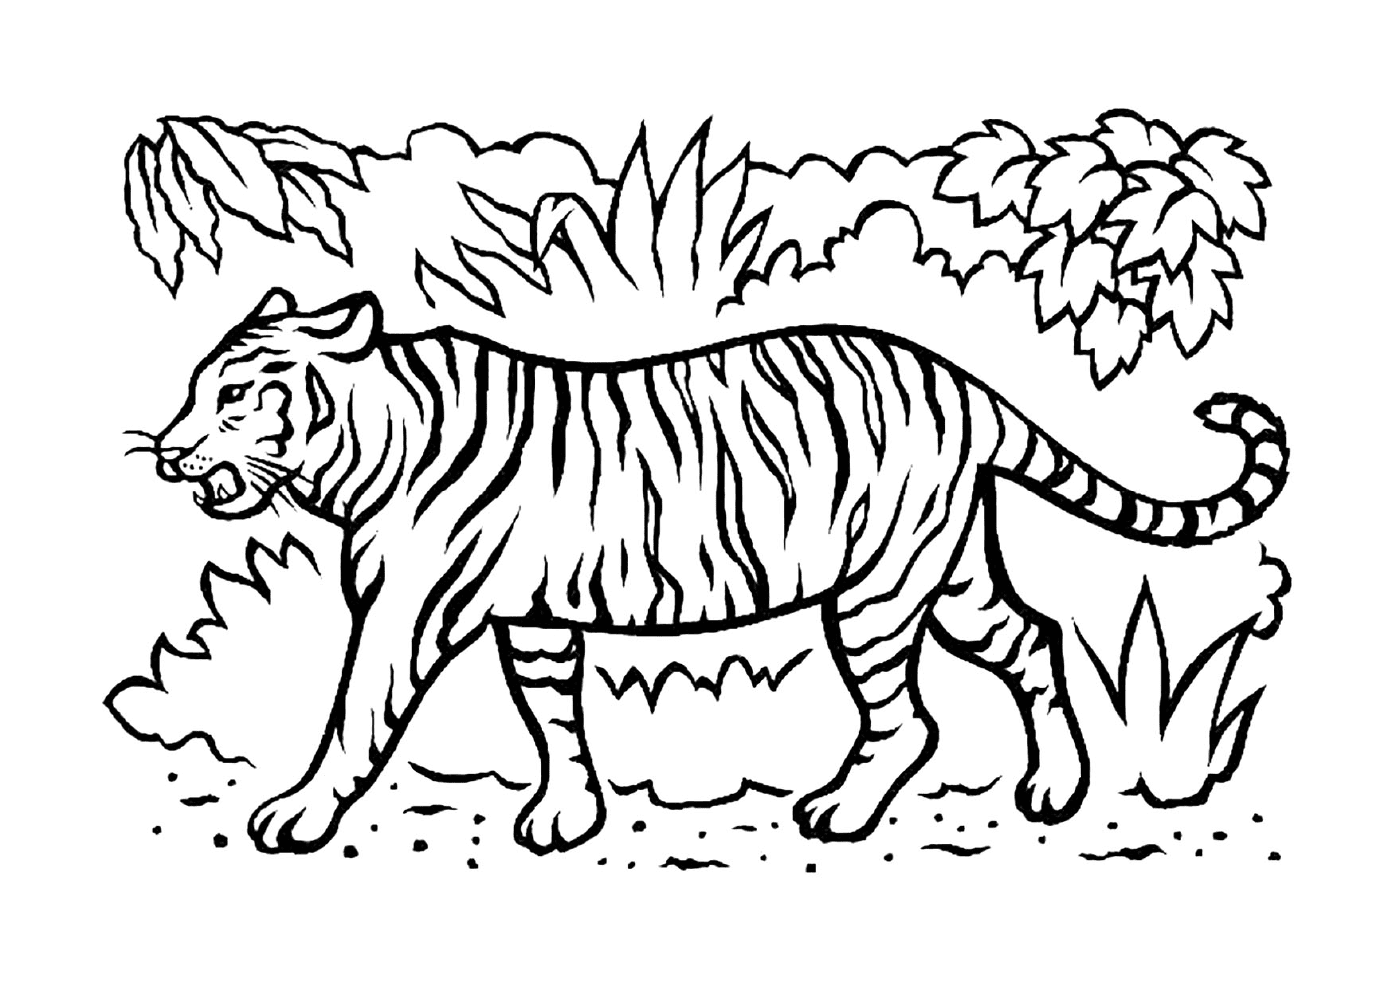  Una bella tigre nella savana 